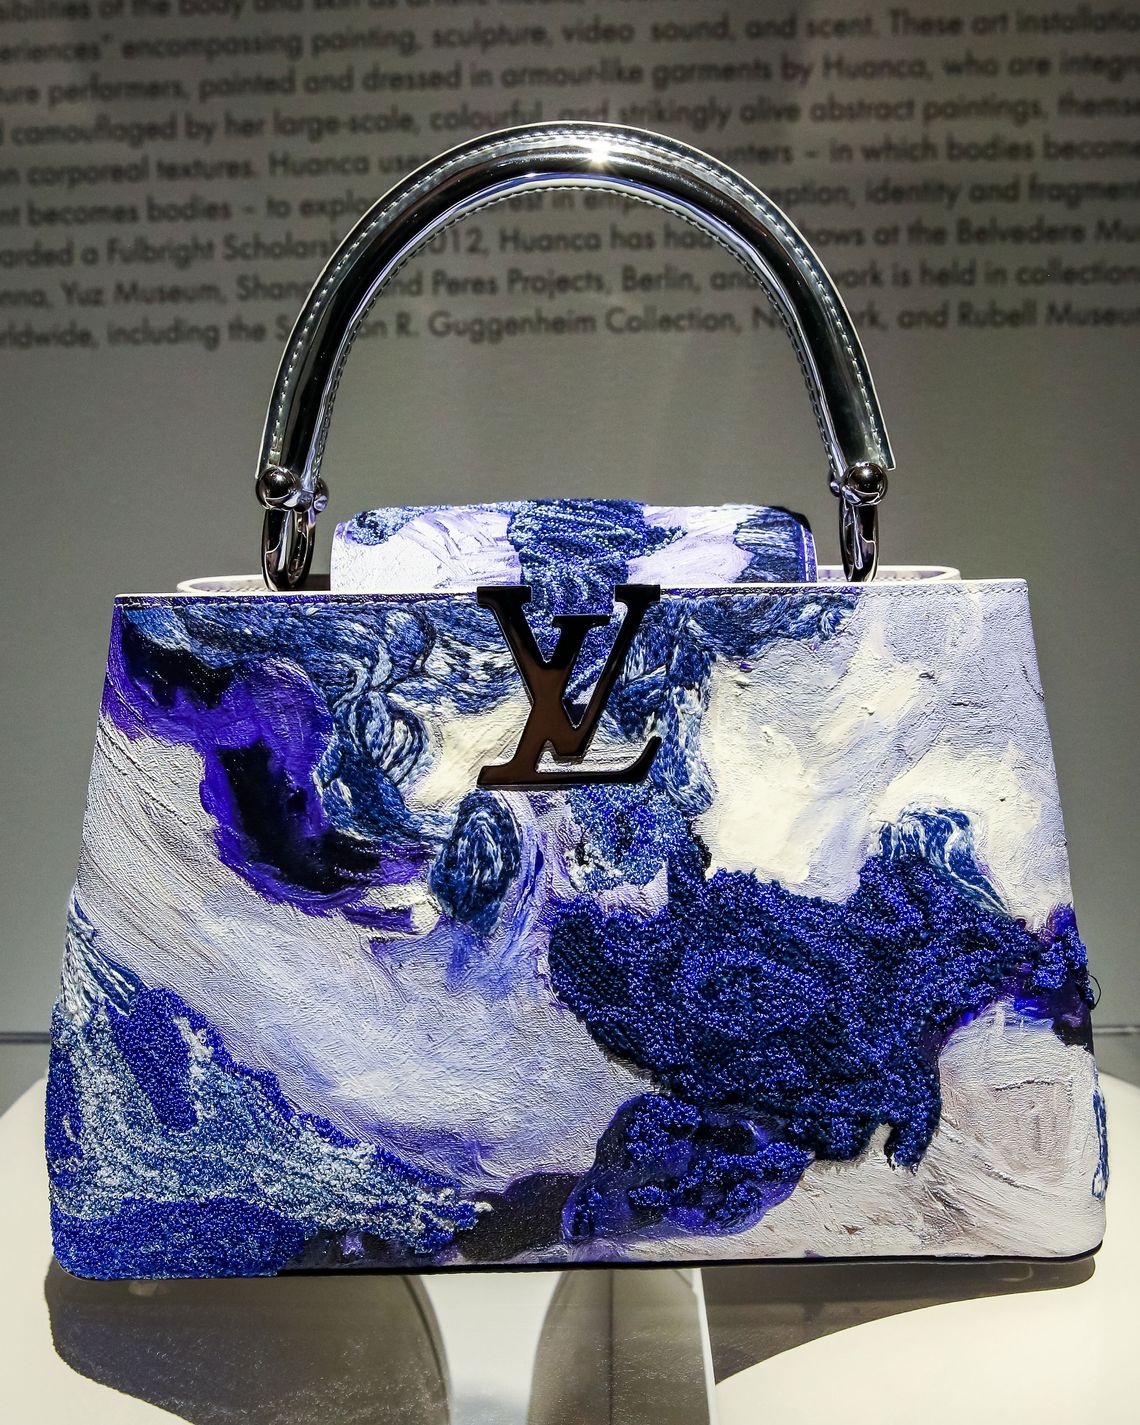 I Paint a Louis Vuitton Bag for a Famous r! 